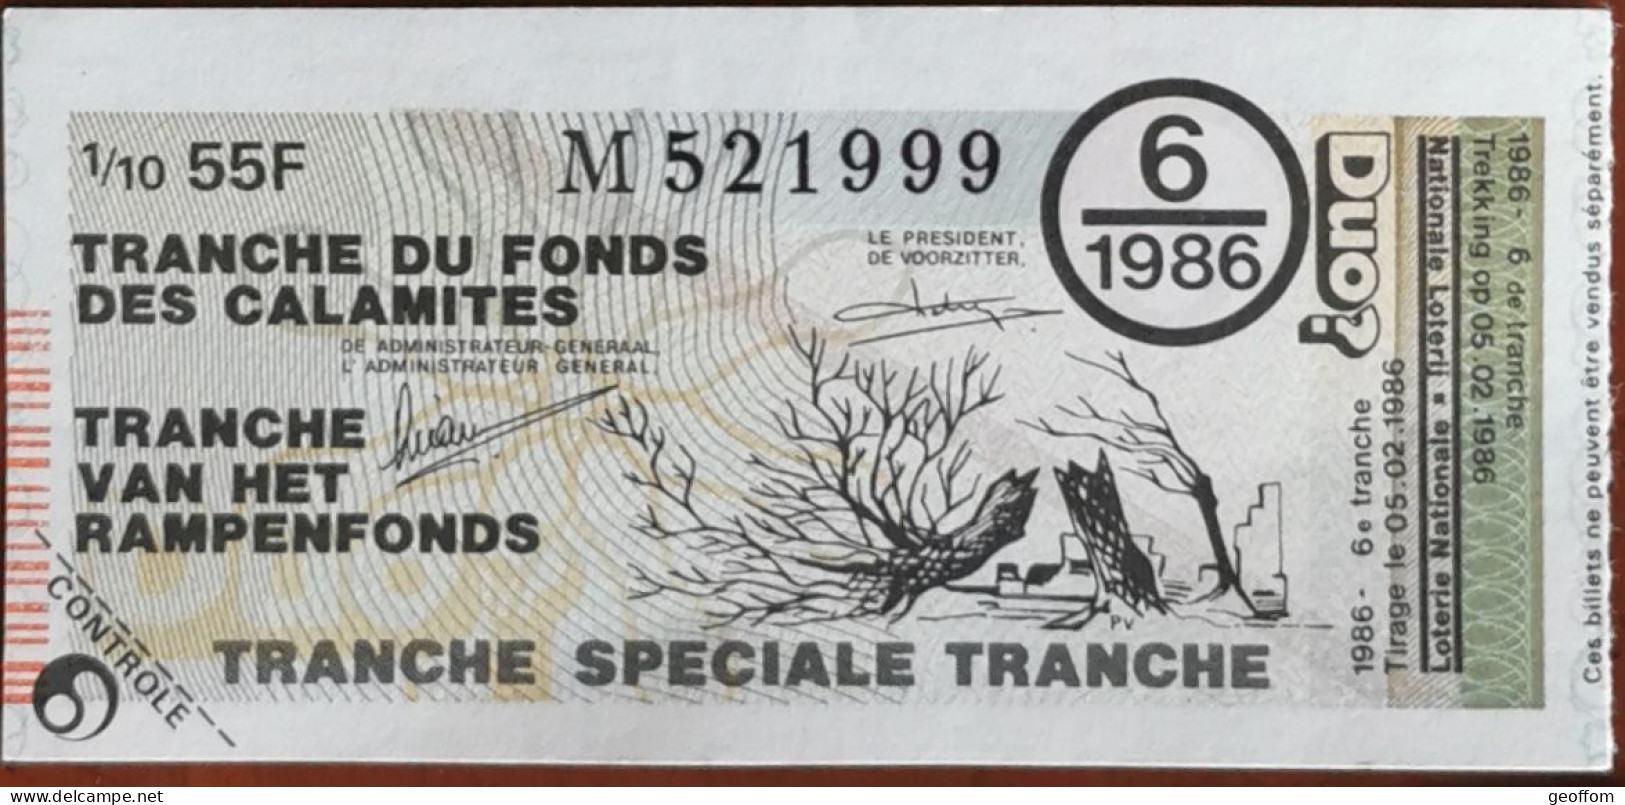 Billet De Loterie Nationale Belgique 1986 6e Tranche Du Fond Des Calamites - 5-2-1986 - Billetes De Lotería